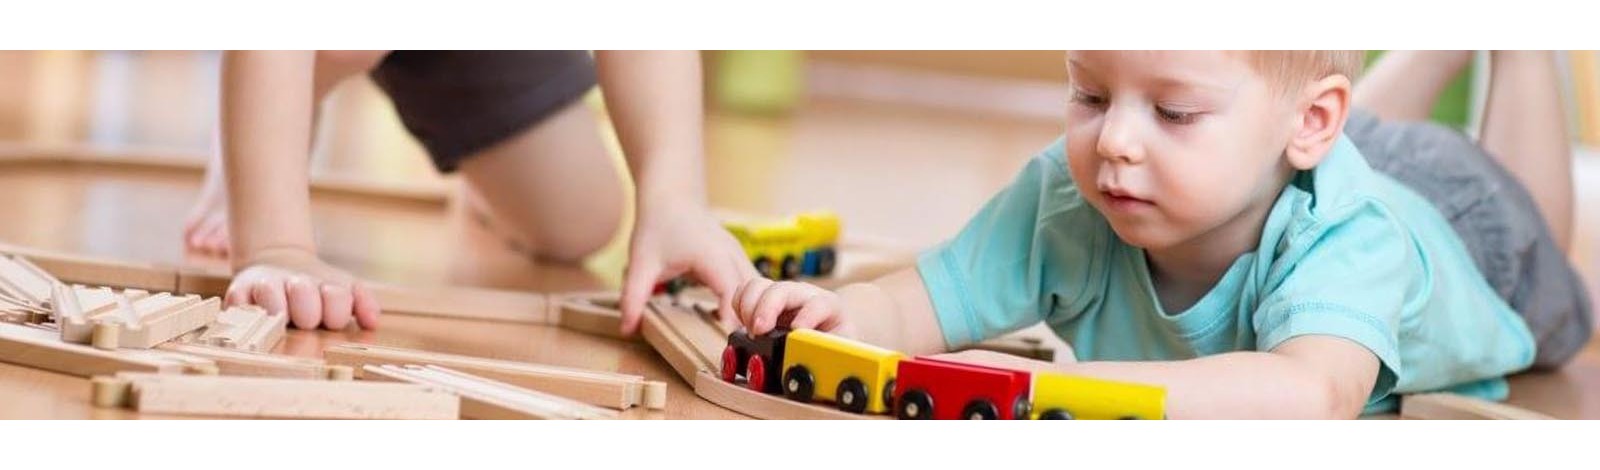 Juegos y juguetes didácticos para niños de 4 a 5 años 